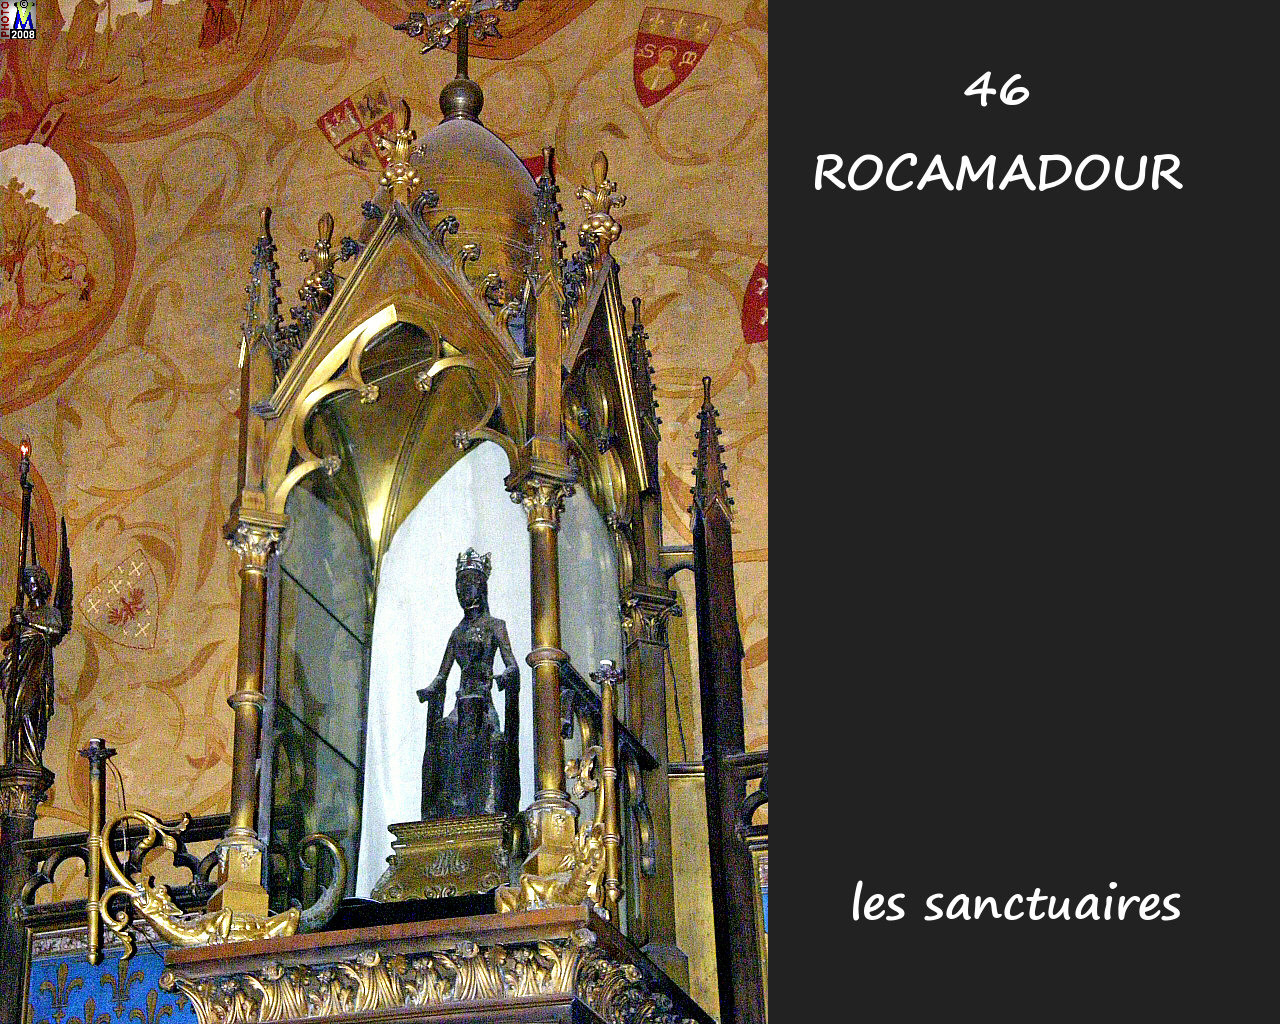 46ROCAMADOUR_sanctuaires_610.jpg